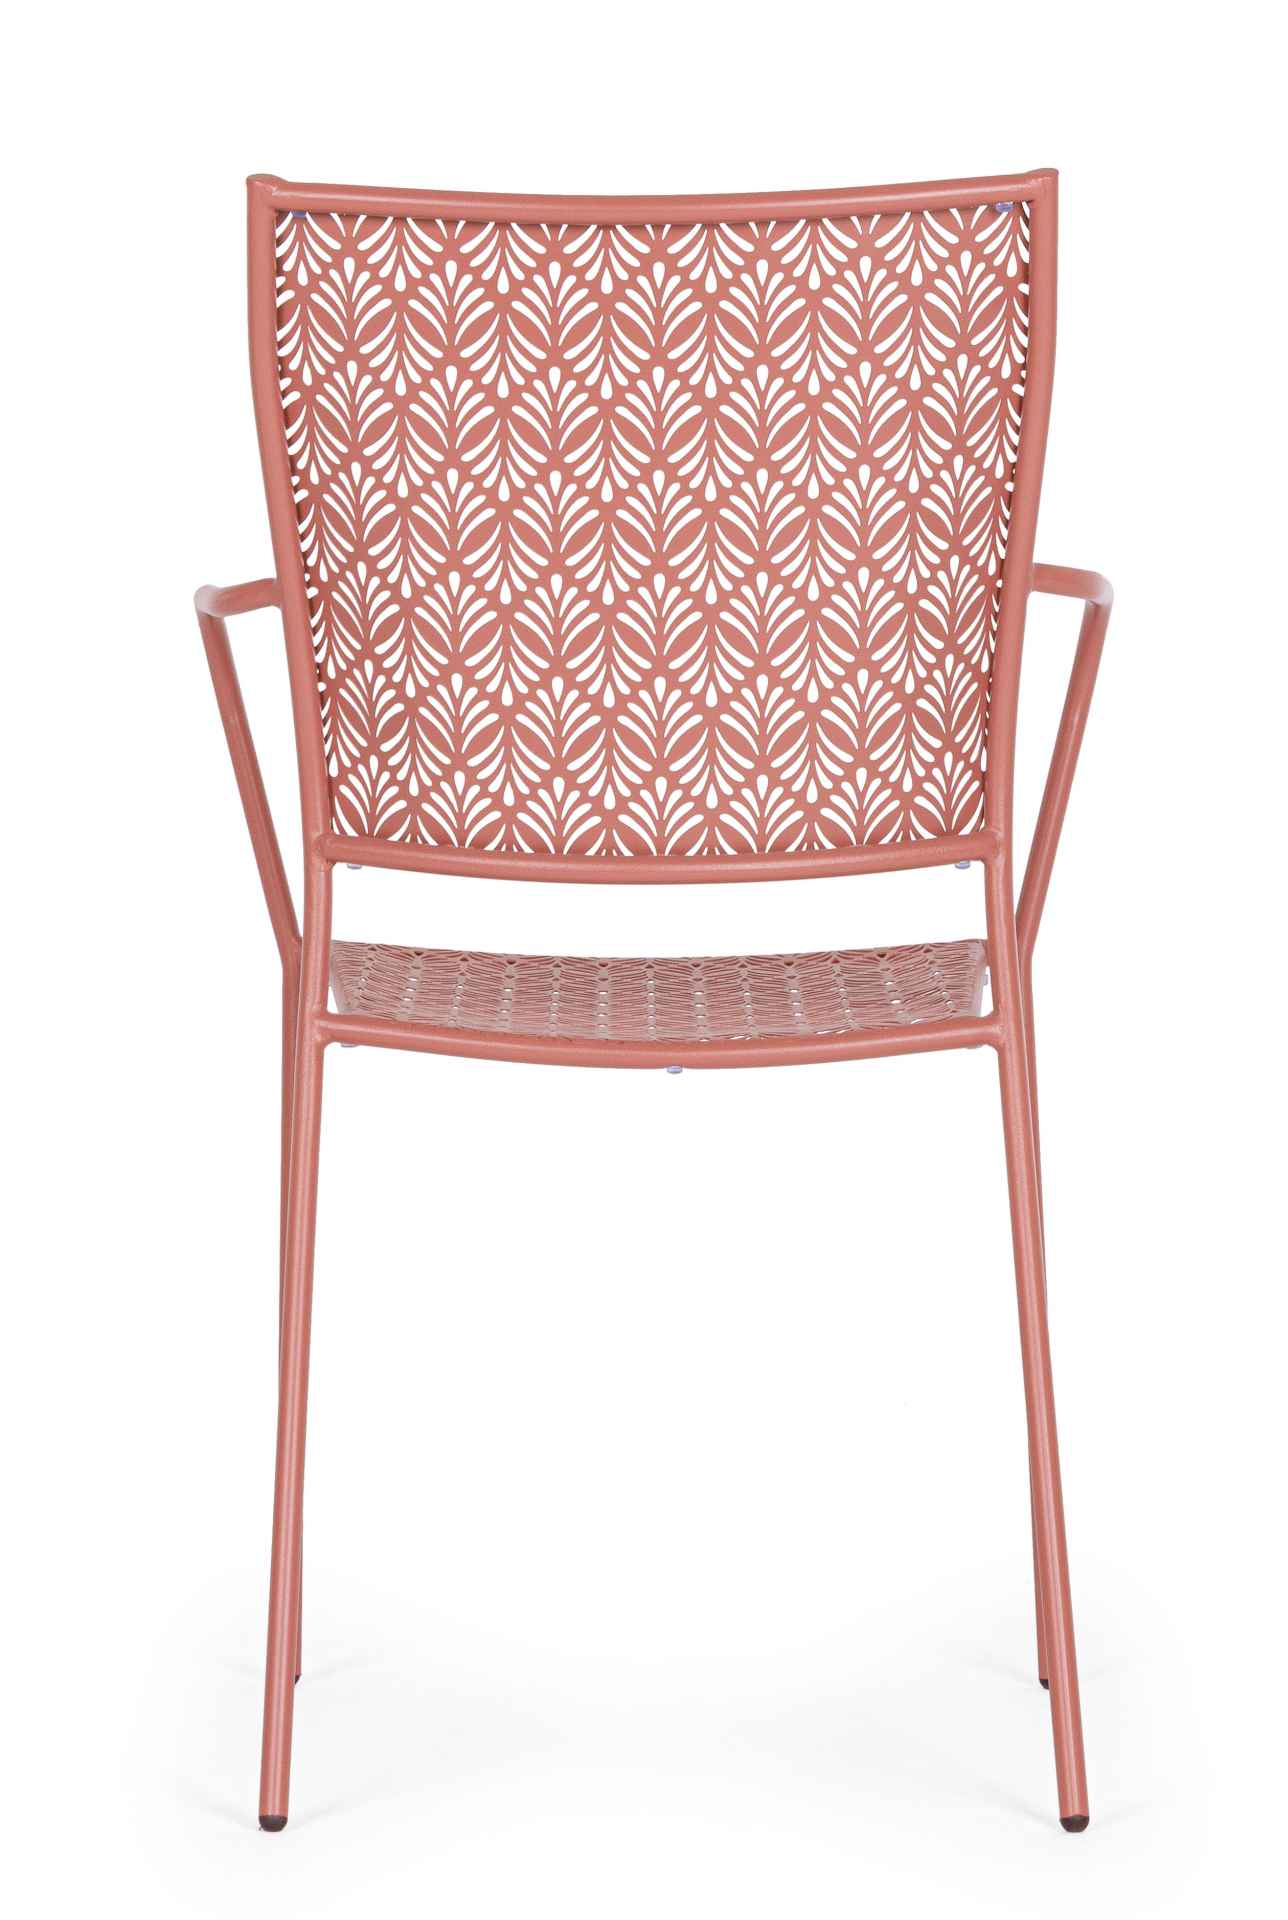 Der Gartenstuhl Lizette überzeugt mit seinem klassischen Design. Gefertigt wurde er aus Aluminium, welches einen roten Farbton besitzen. Das Gestell ist aus Aluminium und hat eine rote Farbe. Der Stuhl verfügt über eine Sitzhöhe von 45 cm und ist für den 